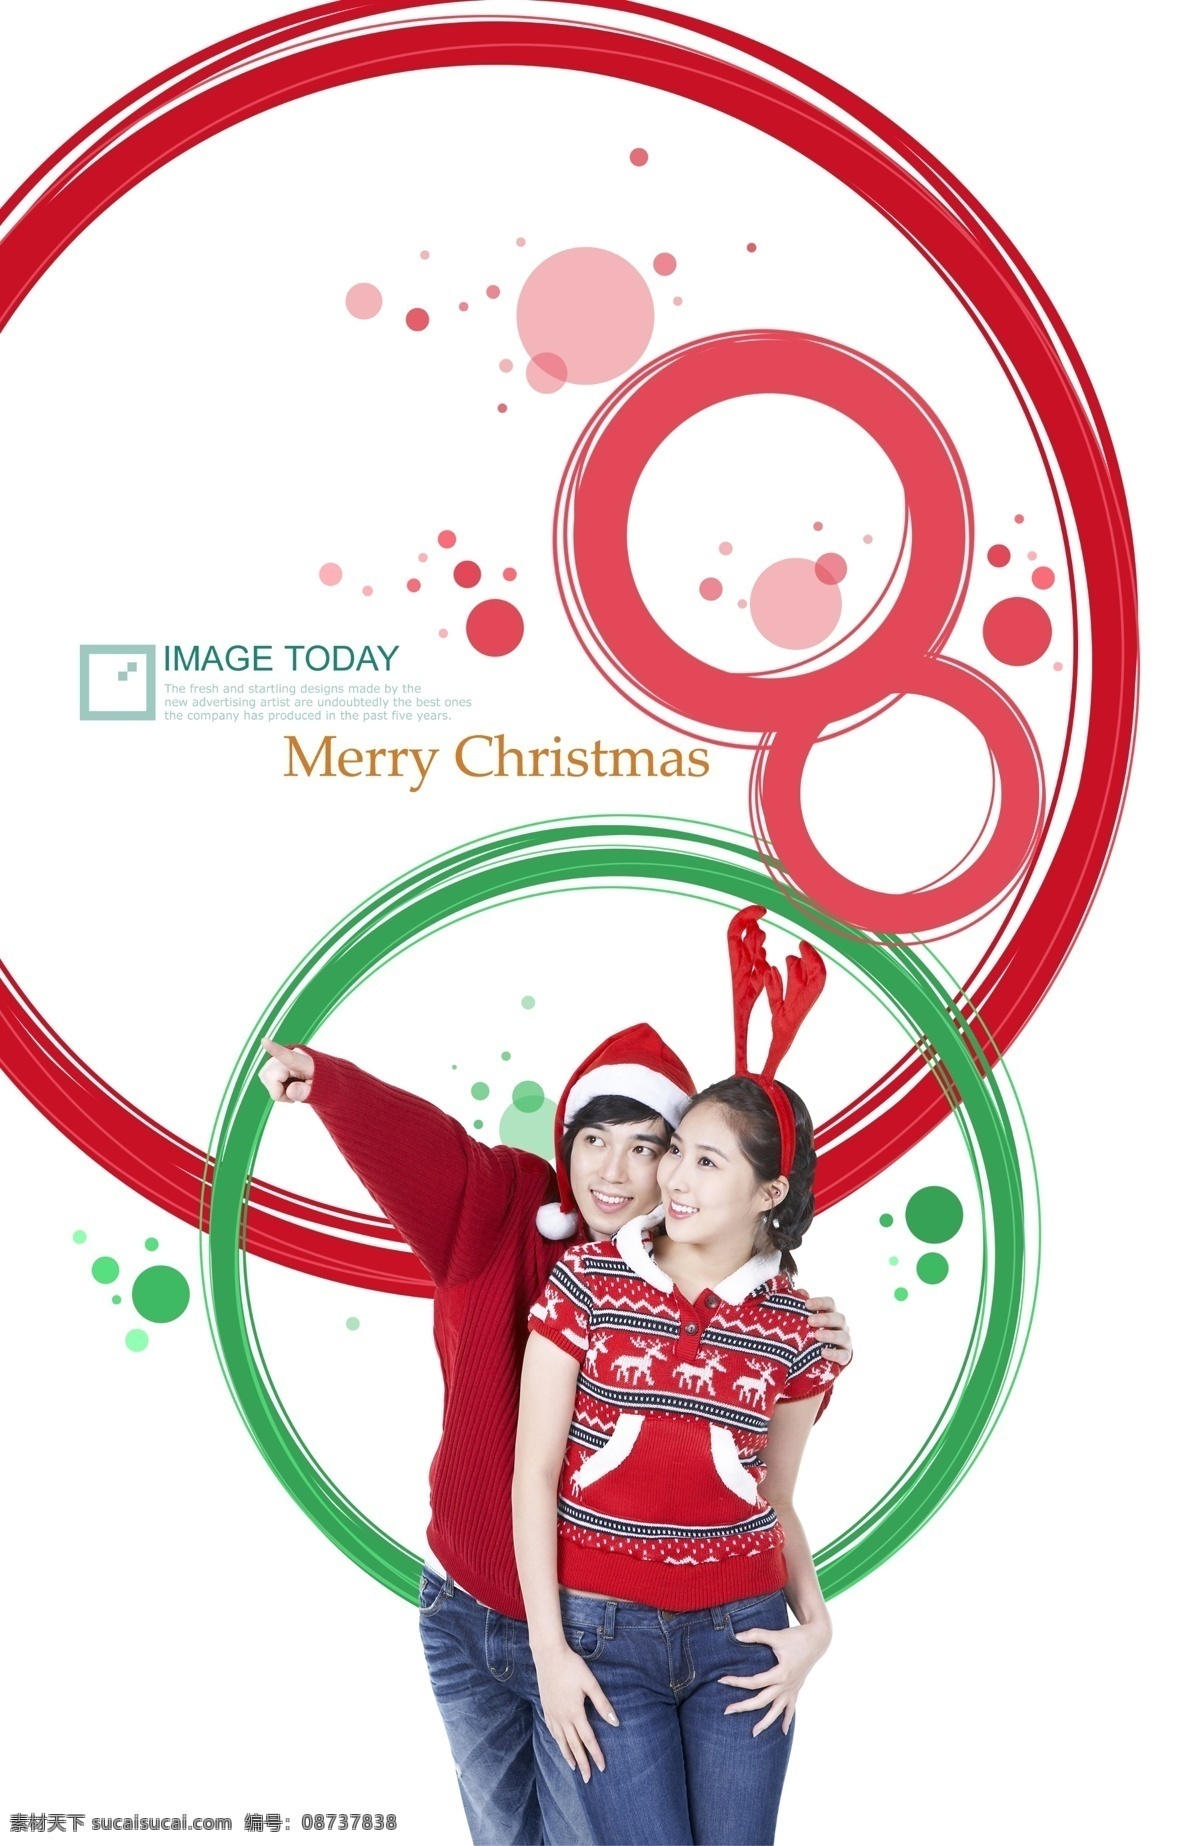 圣诞节 情侣 男女 人物 墨迹 分层 韩国素材 喜庆 时尚 装饰 圣诞美女 圣诞装扮 红色 笑容 开心 情侣男女 帅哥 手势 指向 圆点 绿色 白色